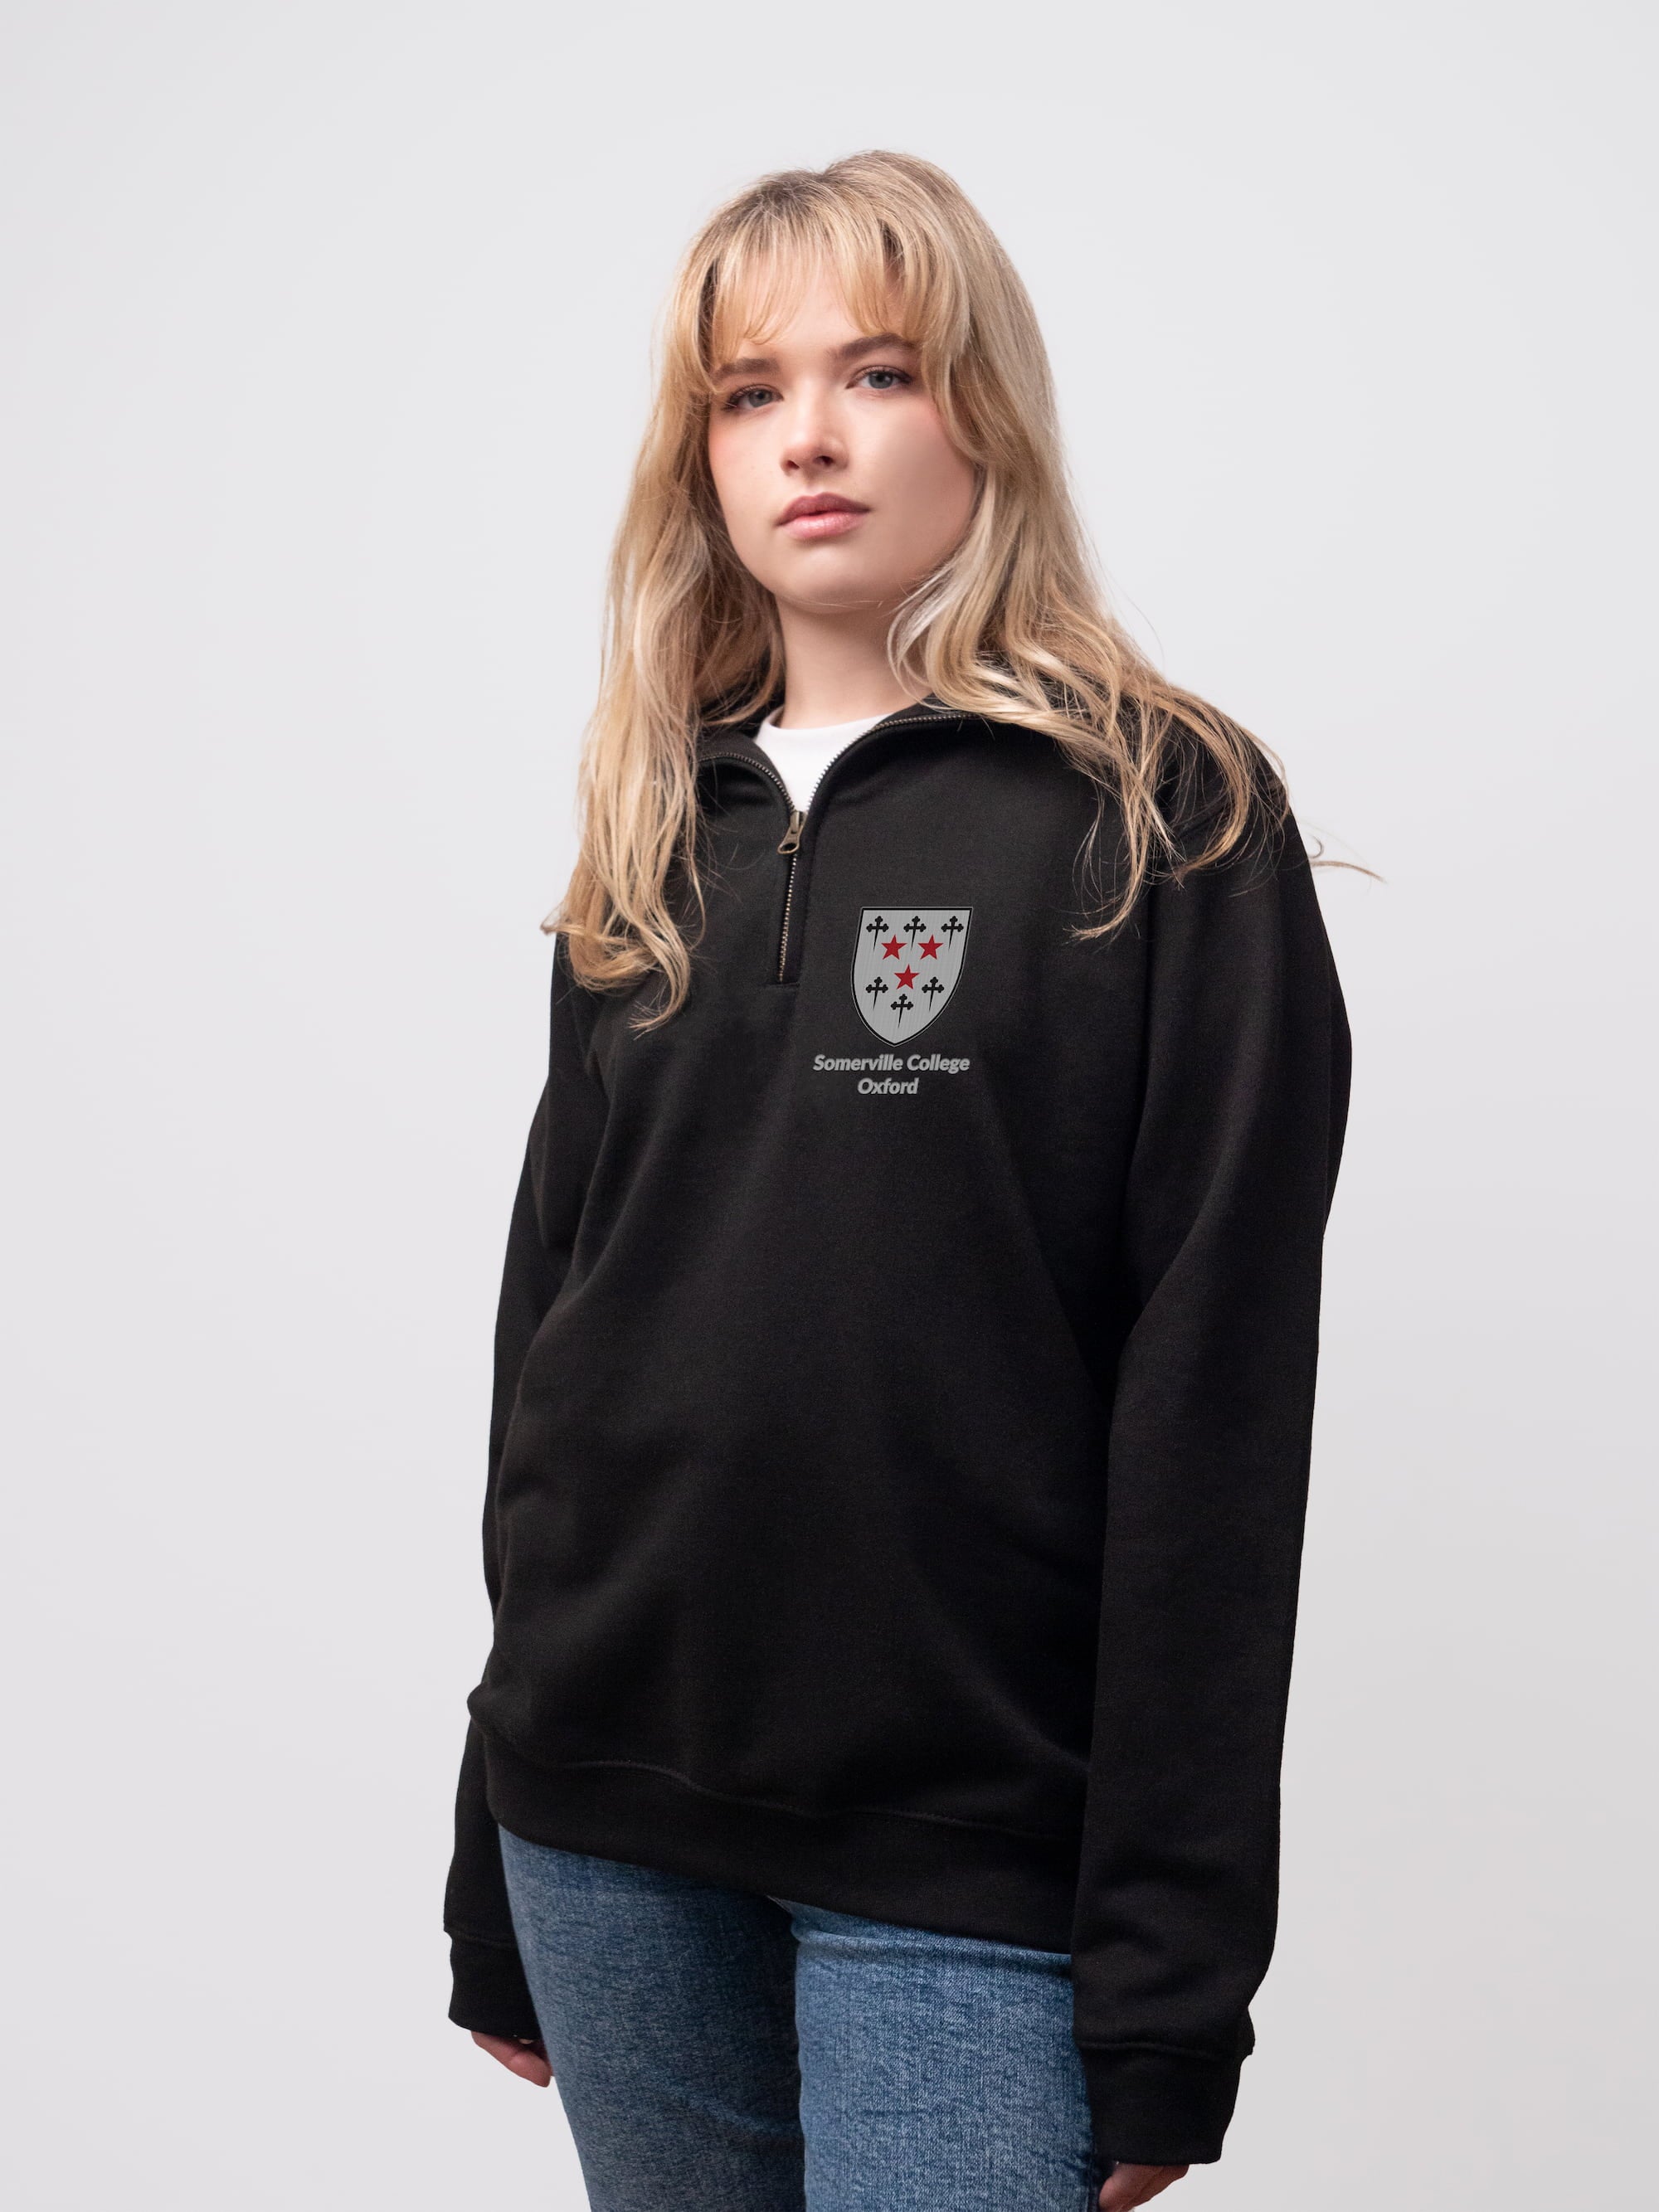 Somerville student wearing a black 1/4 zip sweatshirt 